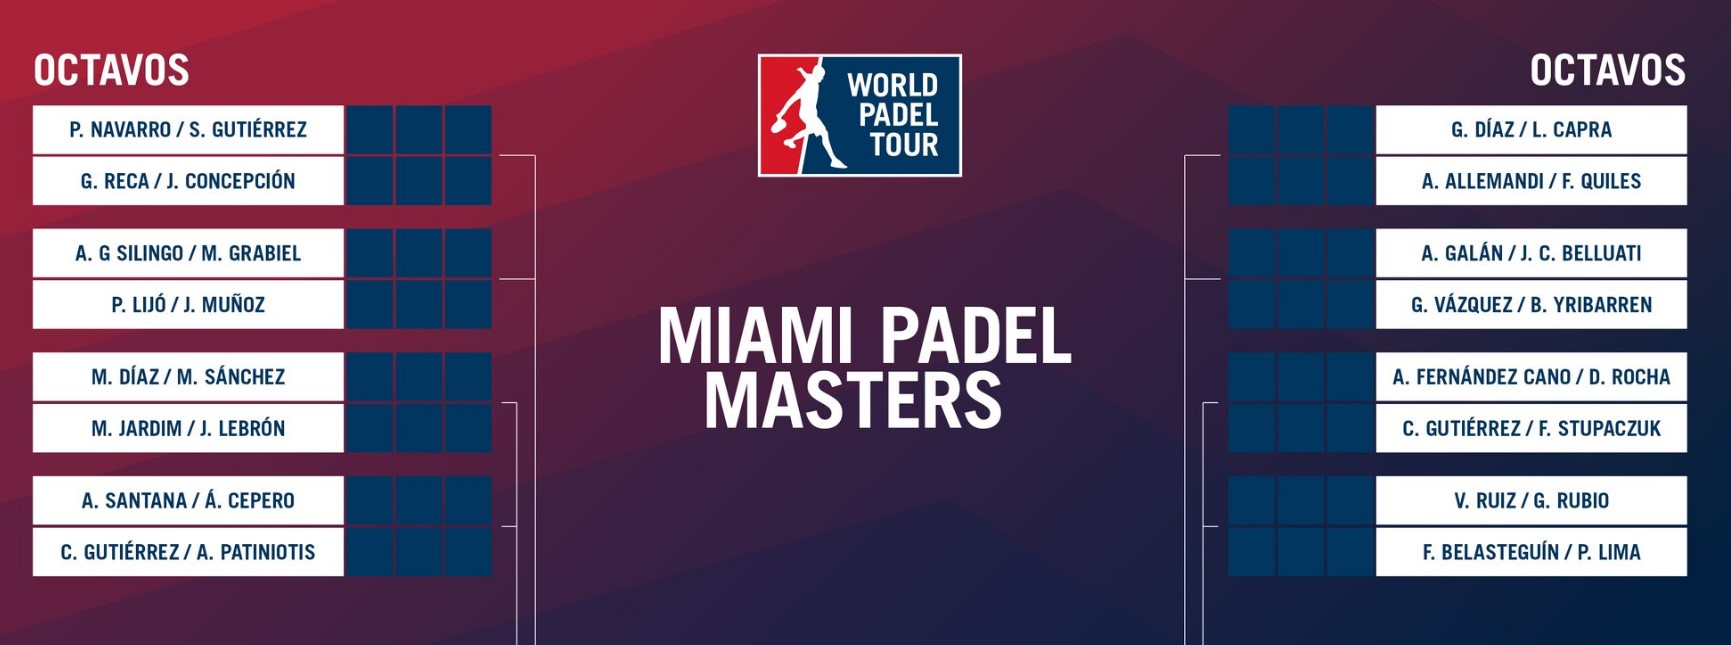 Octavos de final Miami Padel Master